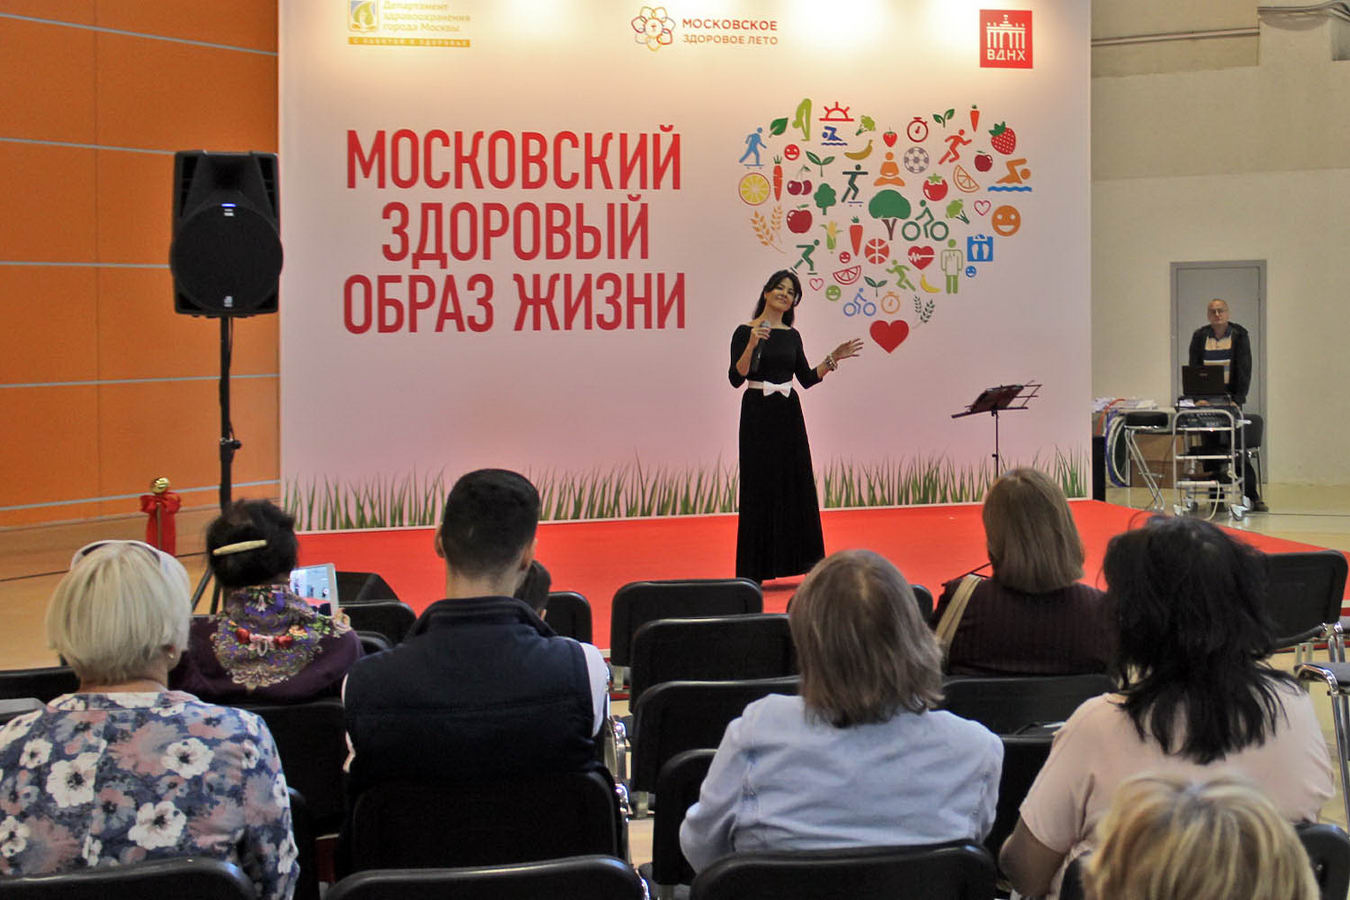 Форум-выставка Москвичам - здоровый образ жизни